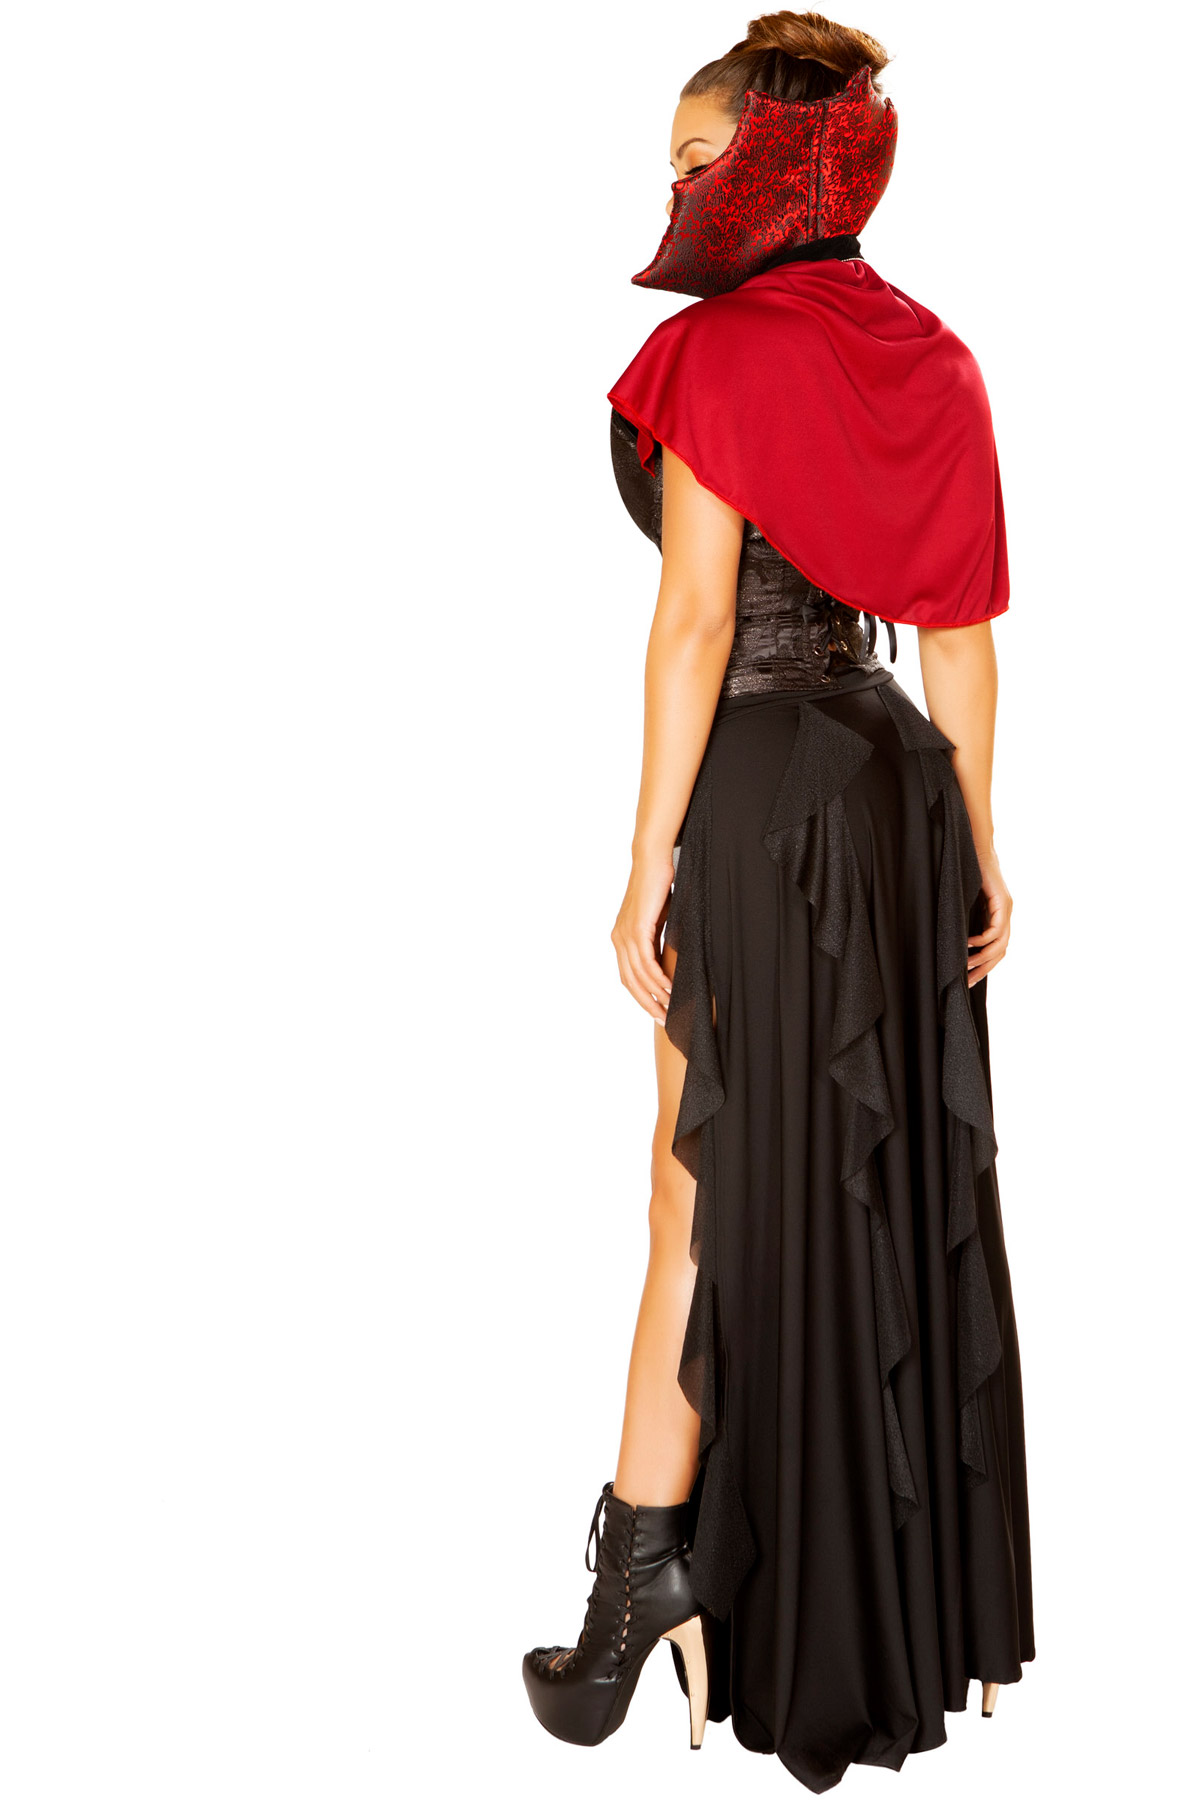 Blood Lusting Vampire Padded Corset Slit Skirt Halloween Costume Adult Women